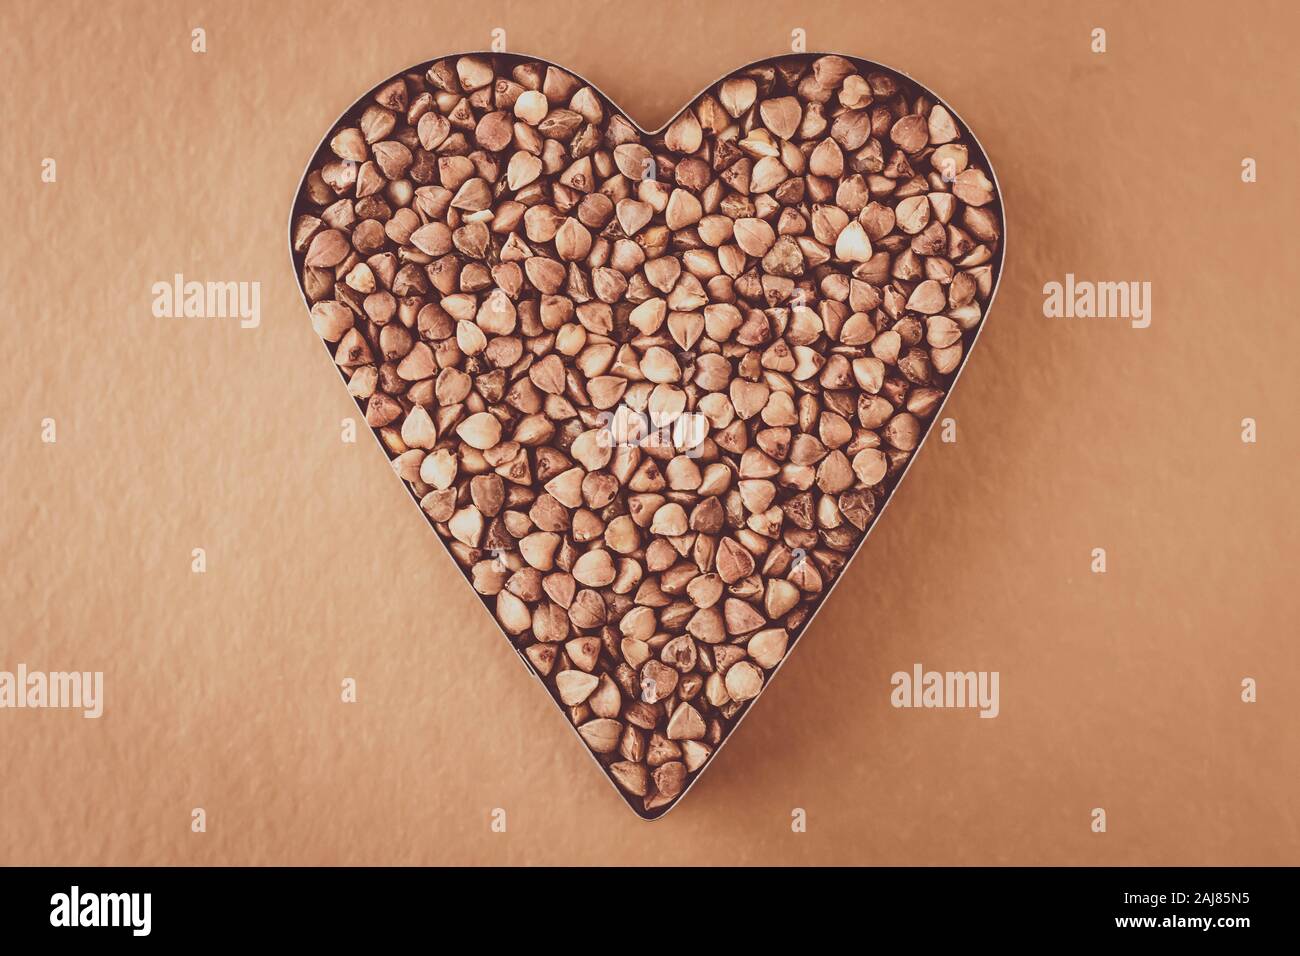 Haufen Buchweizen Körner auf braunen Hintergrund. In Herzform. Bündel von Samen. Kohlenhydratdiät Konzept Stockfoto